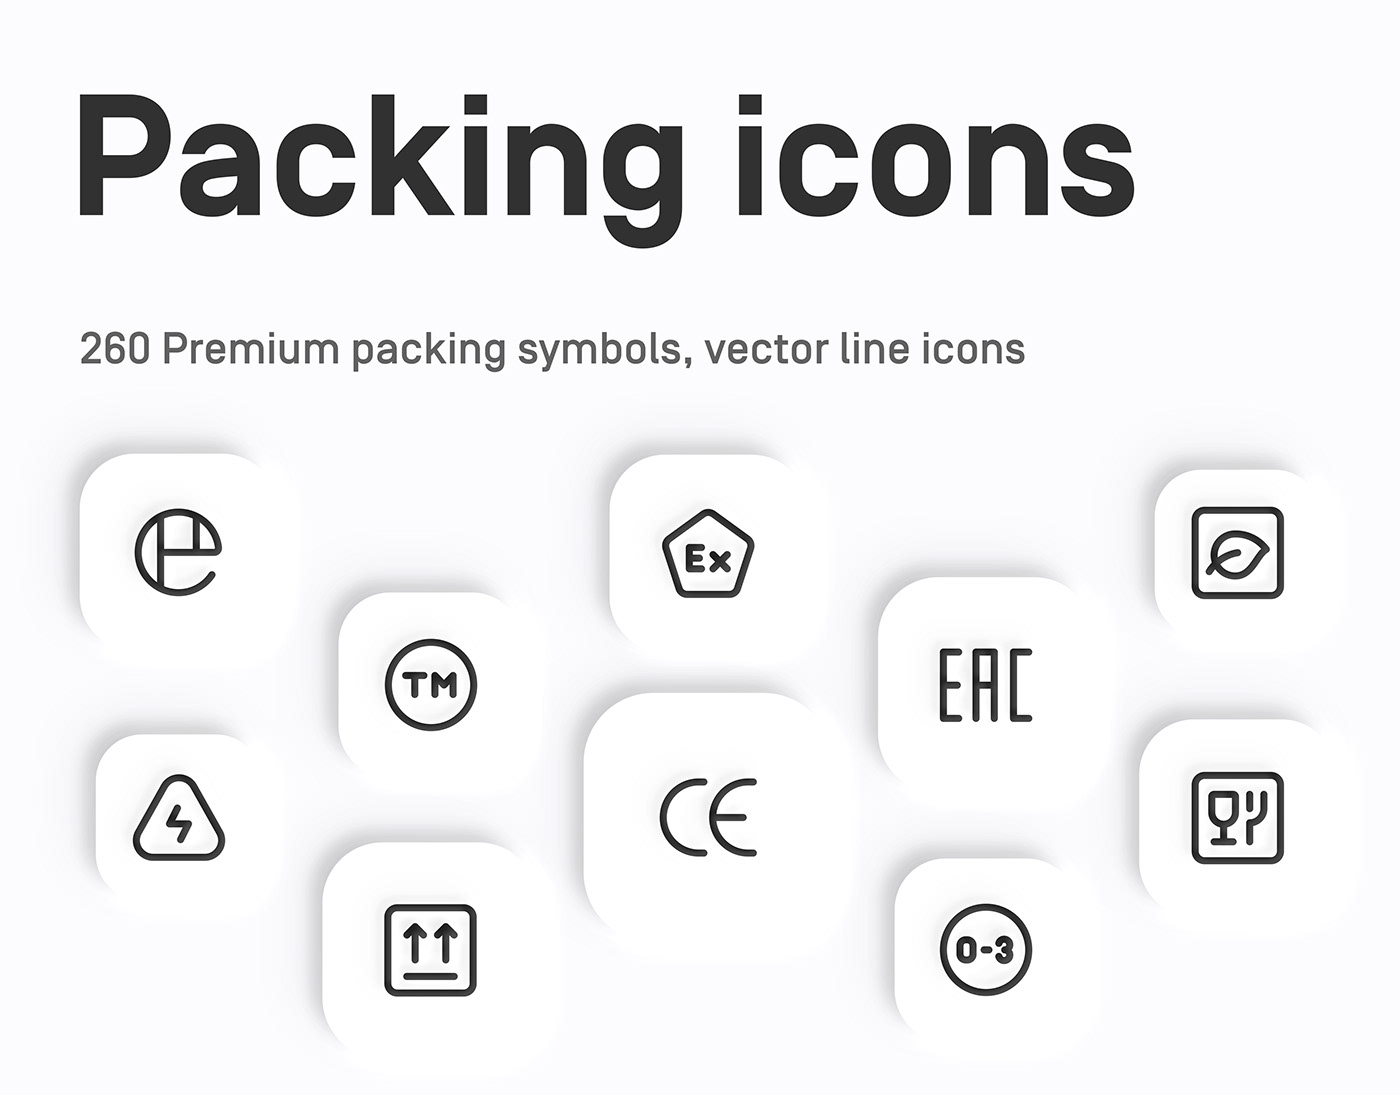 icons icons pack line icons Packaging Packaging icons packaging symbols packing icons packing symbols UI ui design